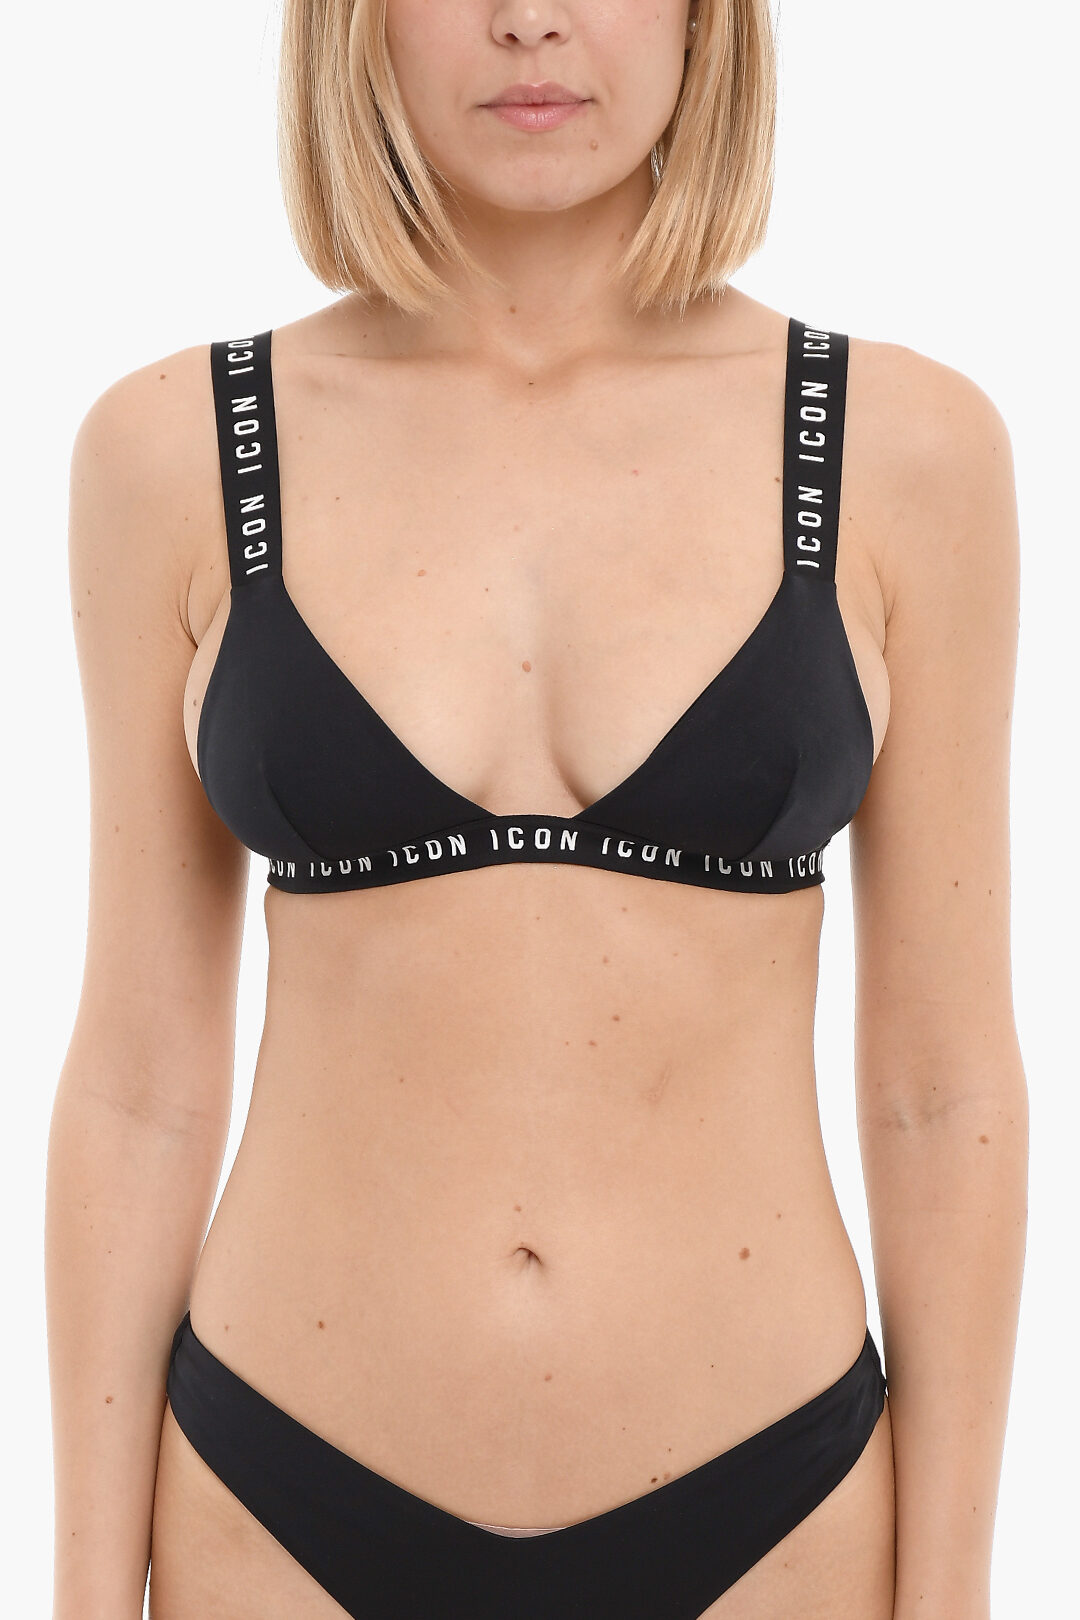 Calvin Klein - Brasiliana bikini nera con fascia con logo a contrasto